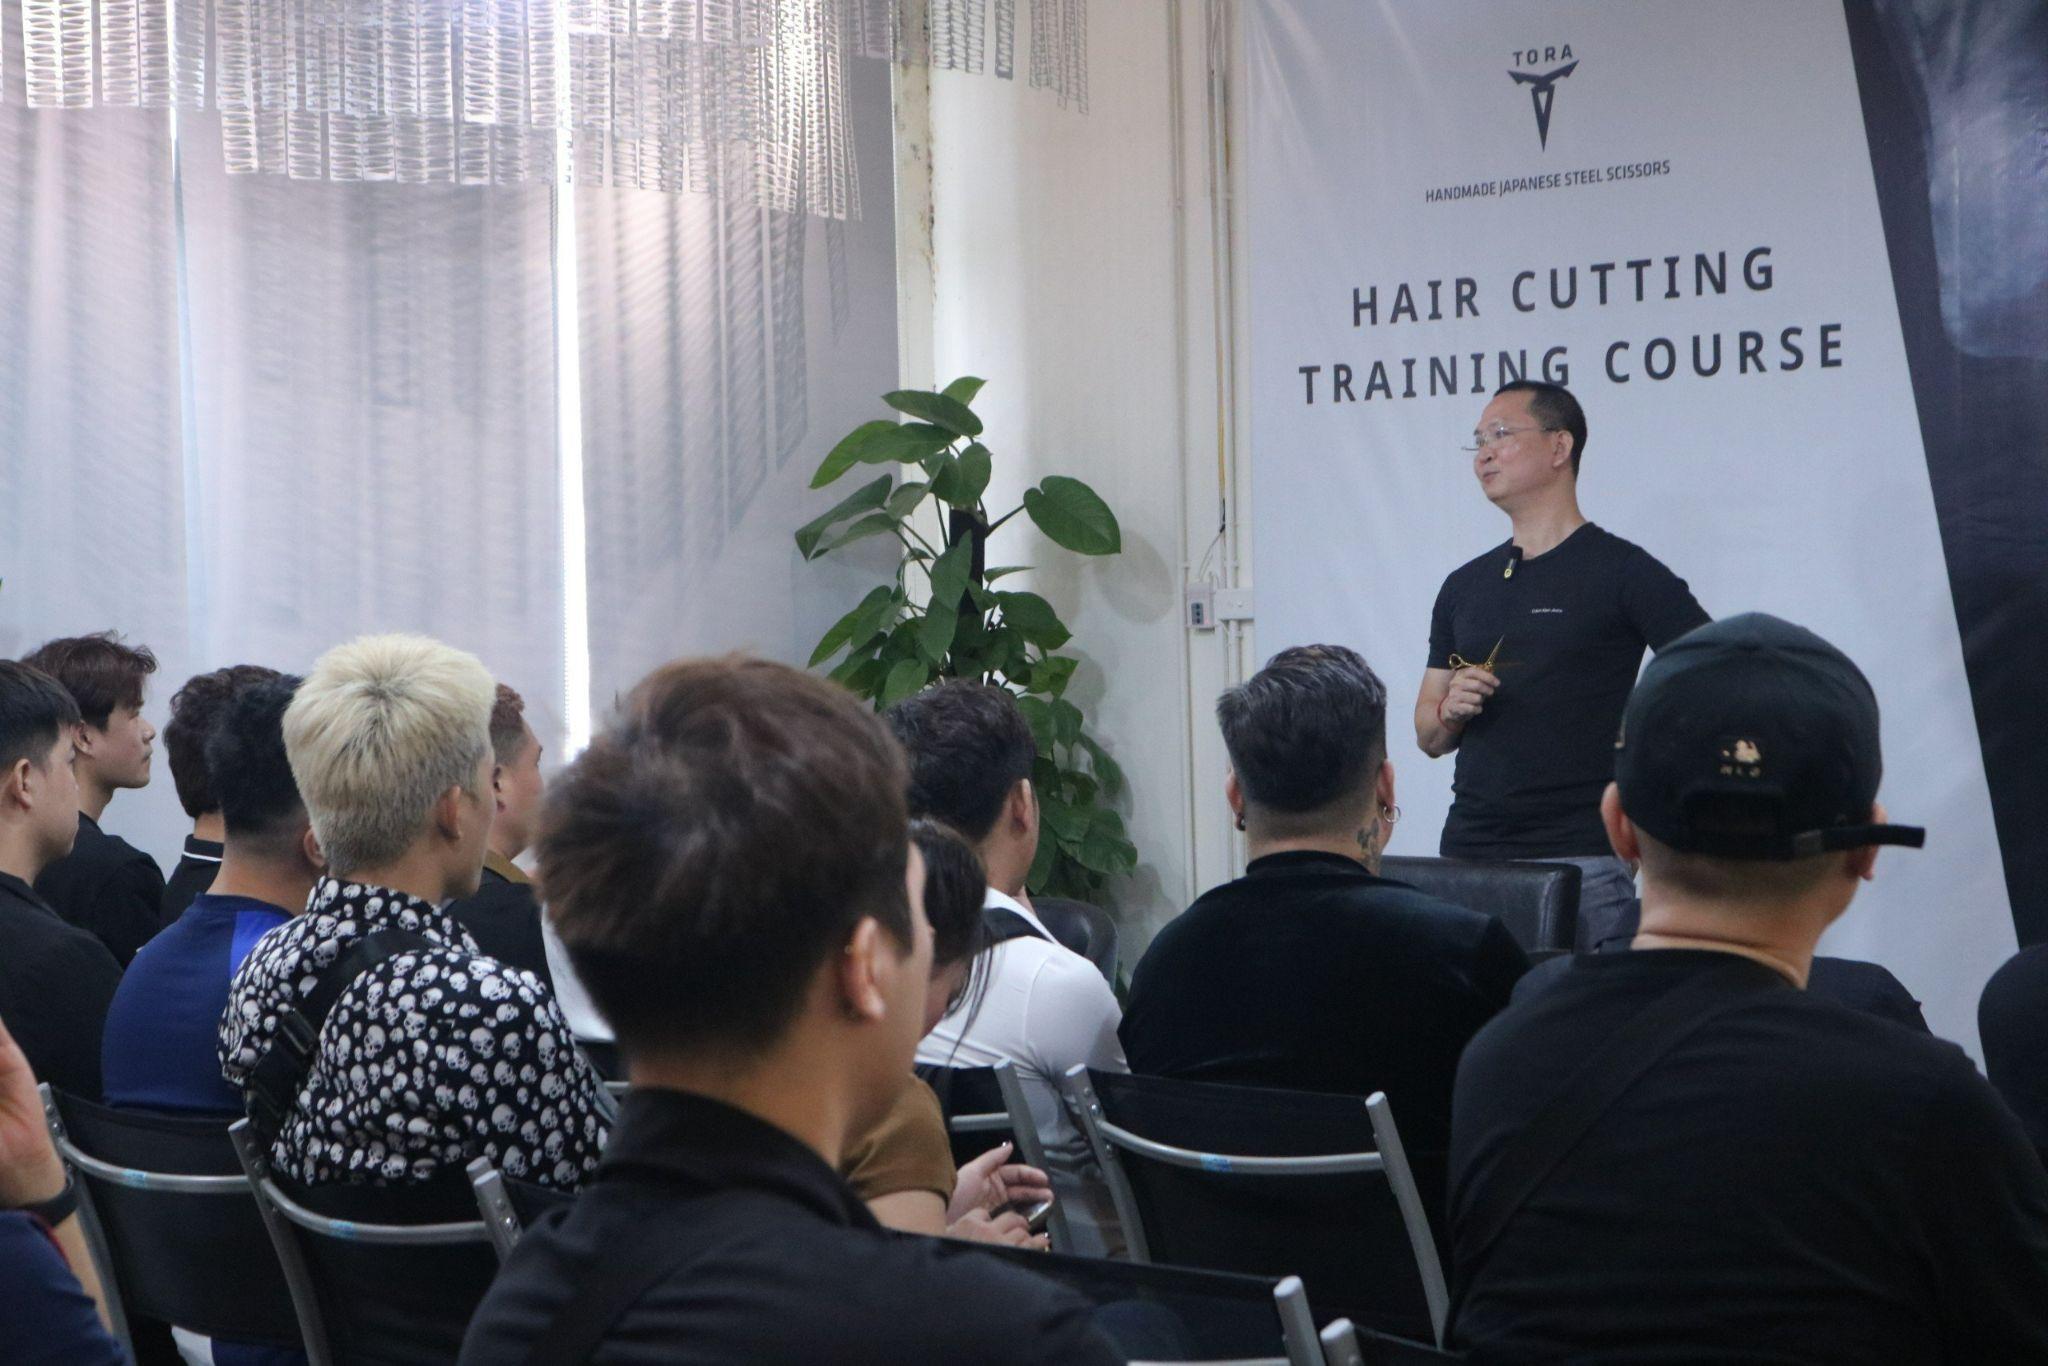 Nhà tạo mẫu tóc Hoàng Minh Tâm và quan điểm thú vị về chuyện chọn kéo cắt tóc - 1